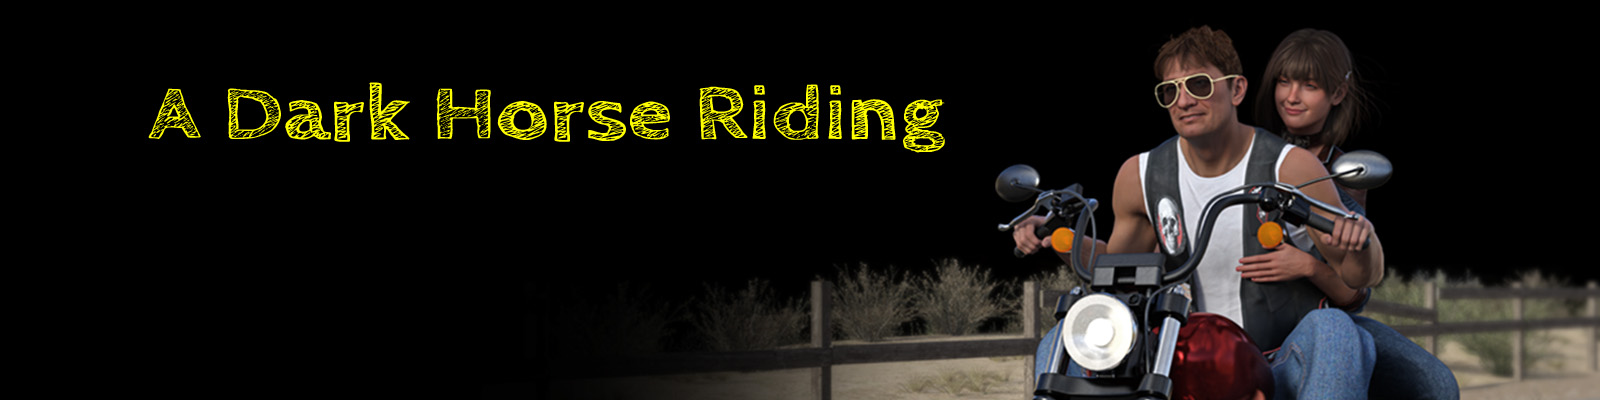 A Dark Horse Riding1.jpg